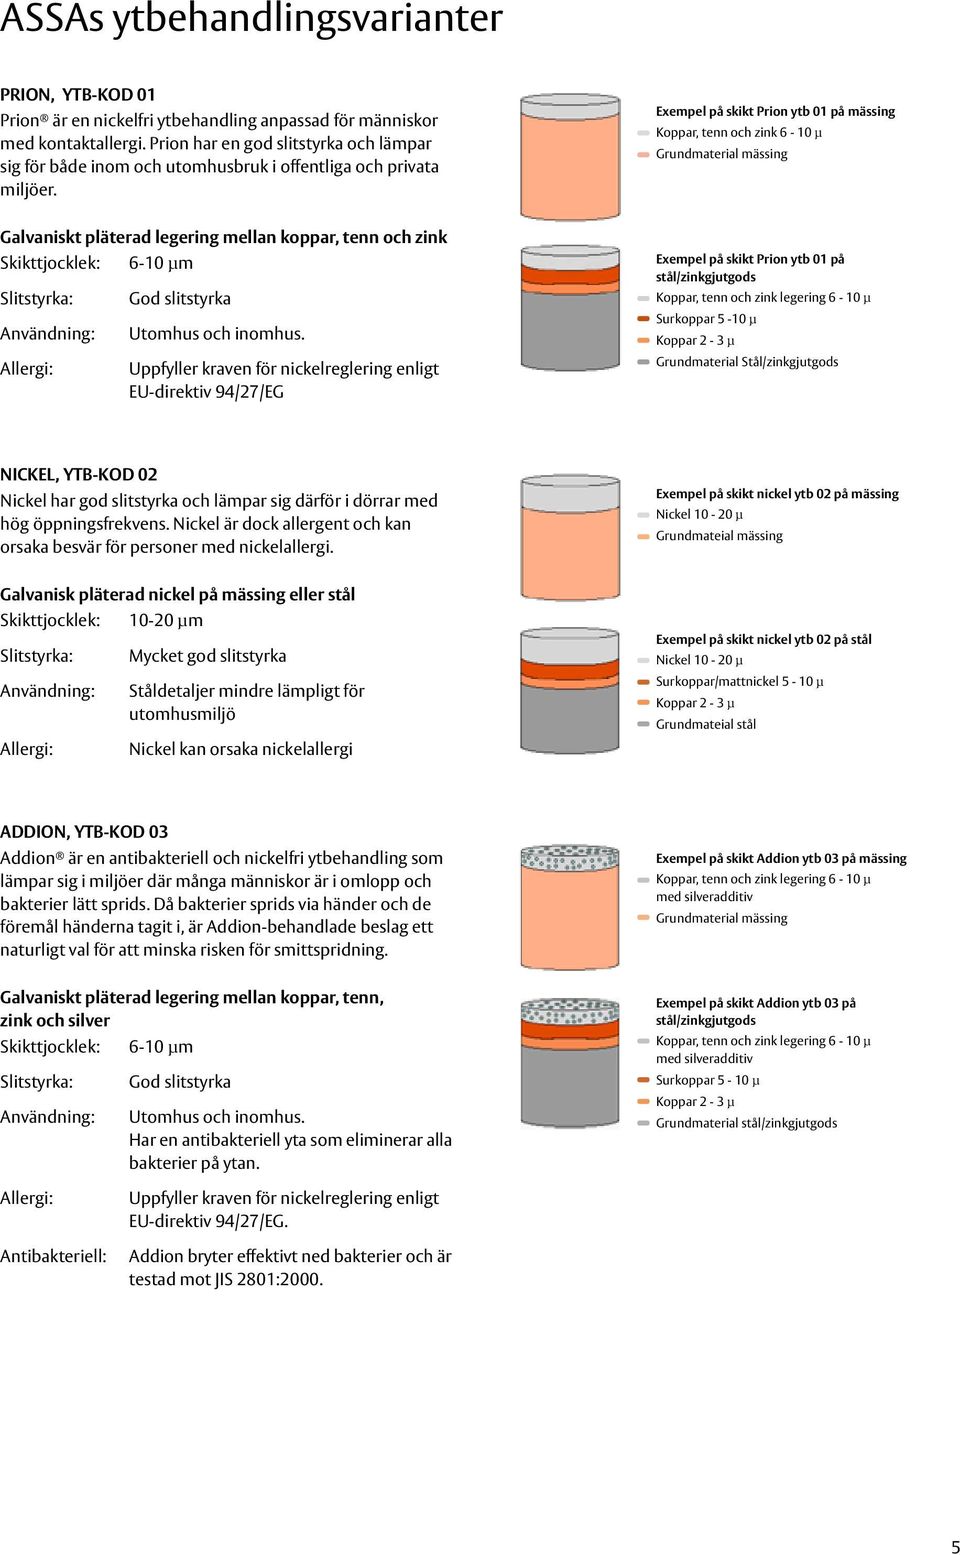 Exempel på skikt Prion ytb 01 på mässing Koppar, tenn och zink 6-10 µ Grundmaterial mässing Galvaniskt pläterad legering mellan koppar, tenn och zink Skikttjocklek: 6-10 µm Allergi: God slitstyrka